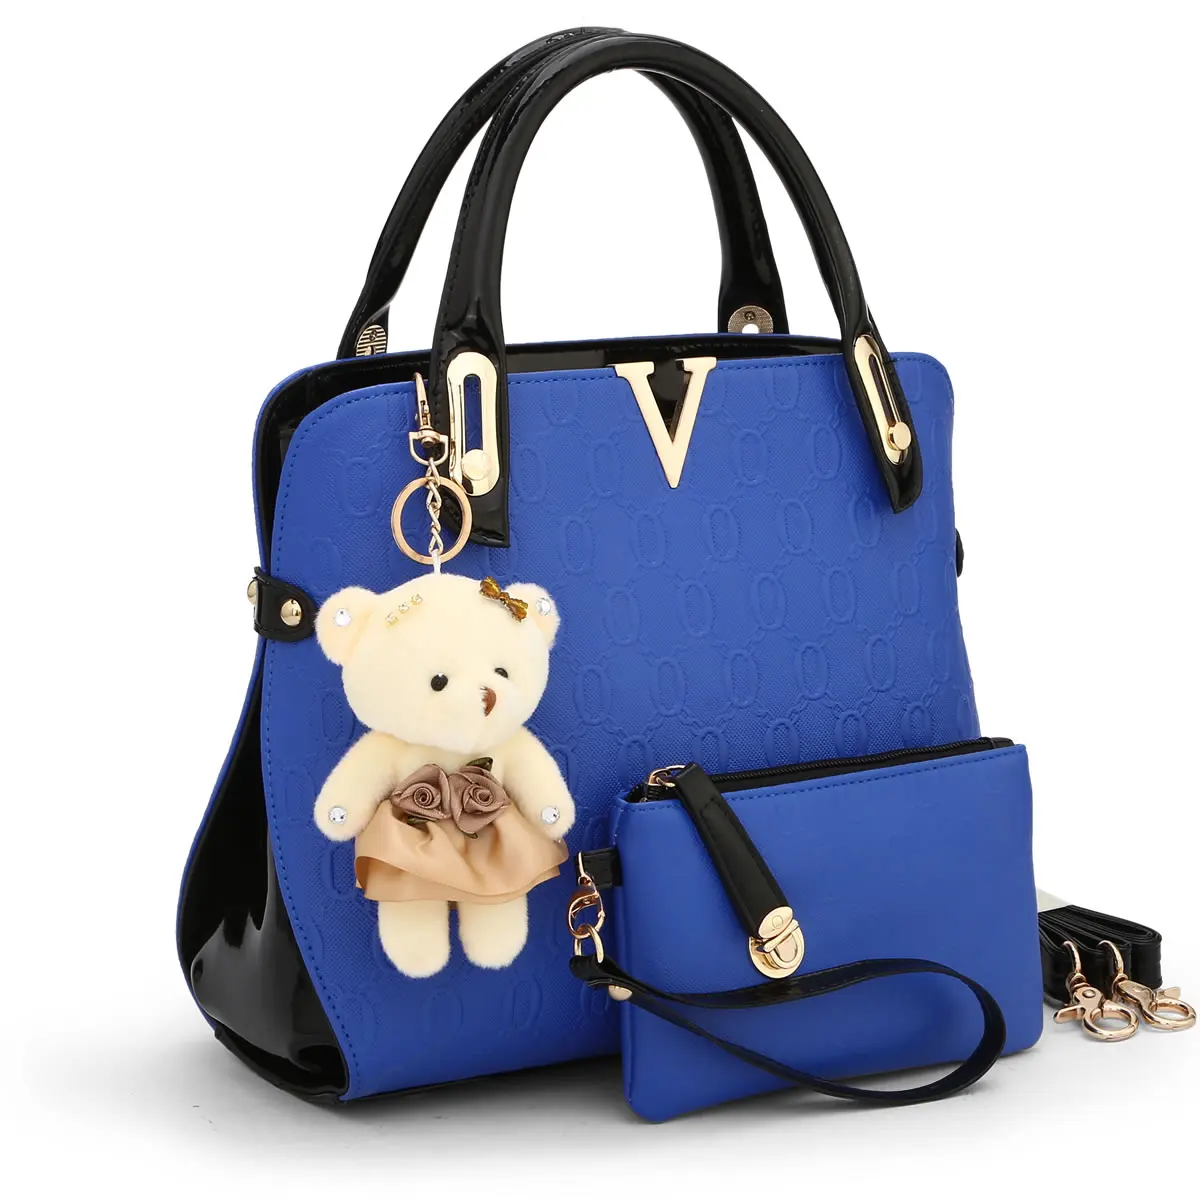 GUR283 высококачественный тисненый кожа сумки для женщин известных брендов сумка и кошелек дизайнер sac основной роскошный комплект - Цвет: navy blue